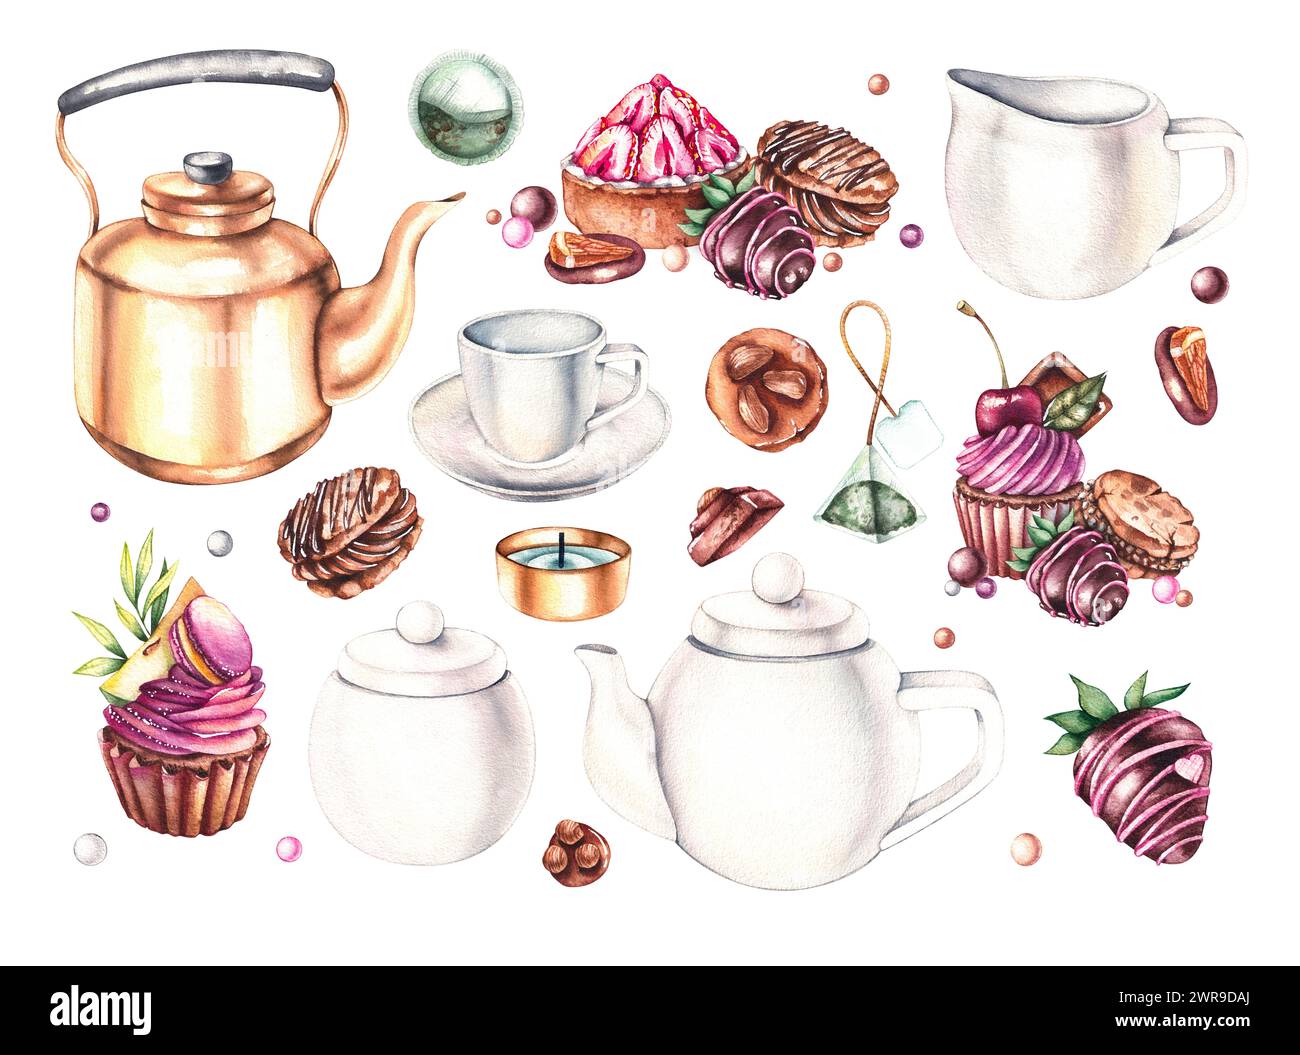 Set per tè bianco acquerello, bustine di tè, zucchero, dolci, cioccolato, dessert, cupcake, tartlet di fragole, fragole ricoperte di cioccolato isolate su bianco Foto Stock